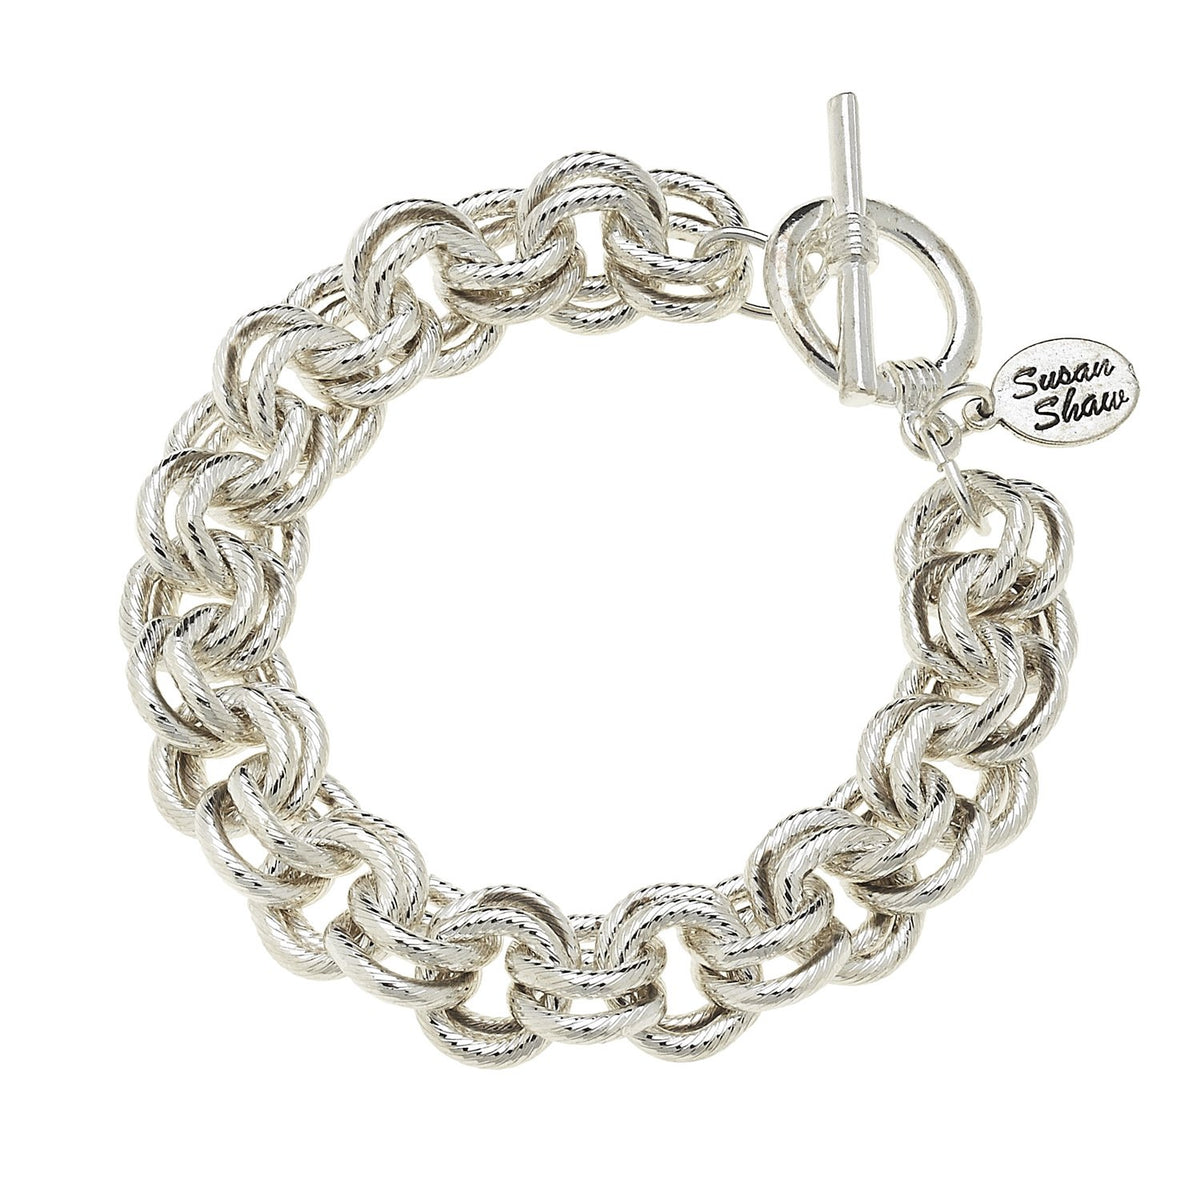 12 Silver Purse Chain Extender, Necklace Chain, Bracelet Extension